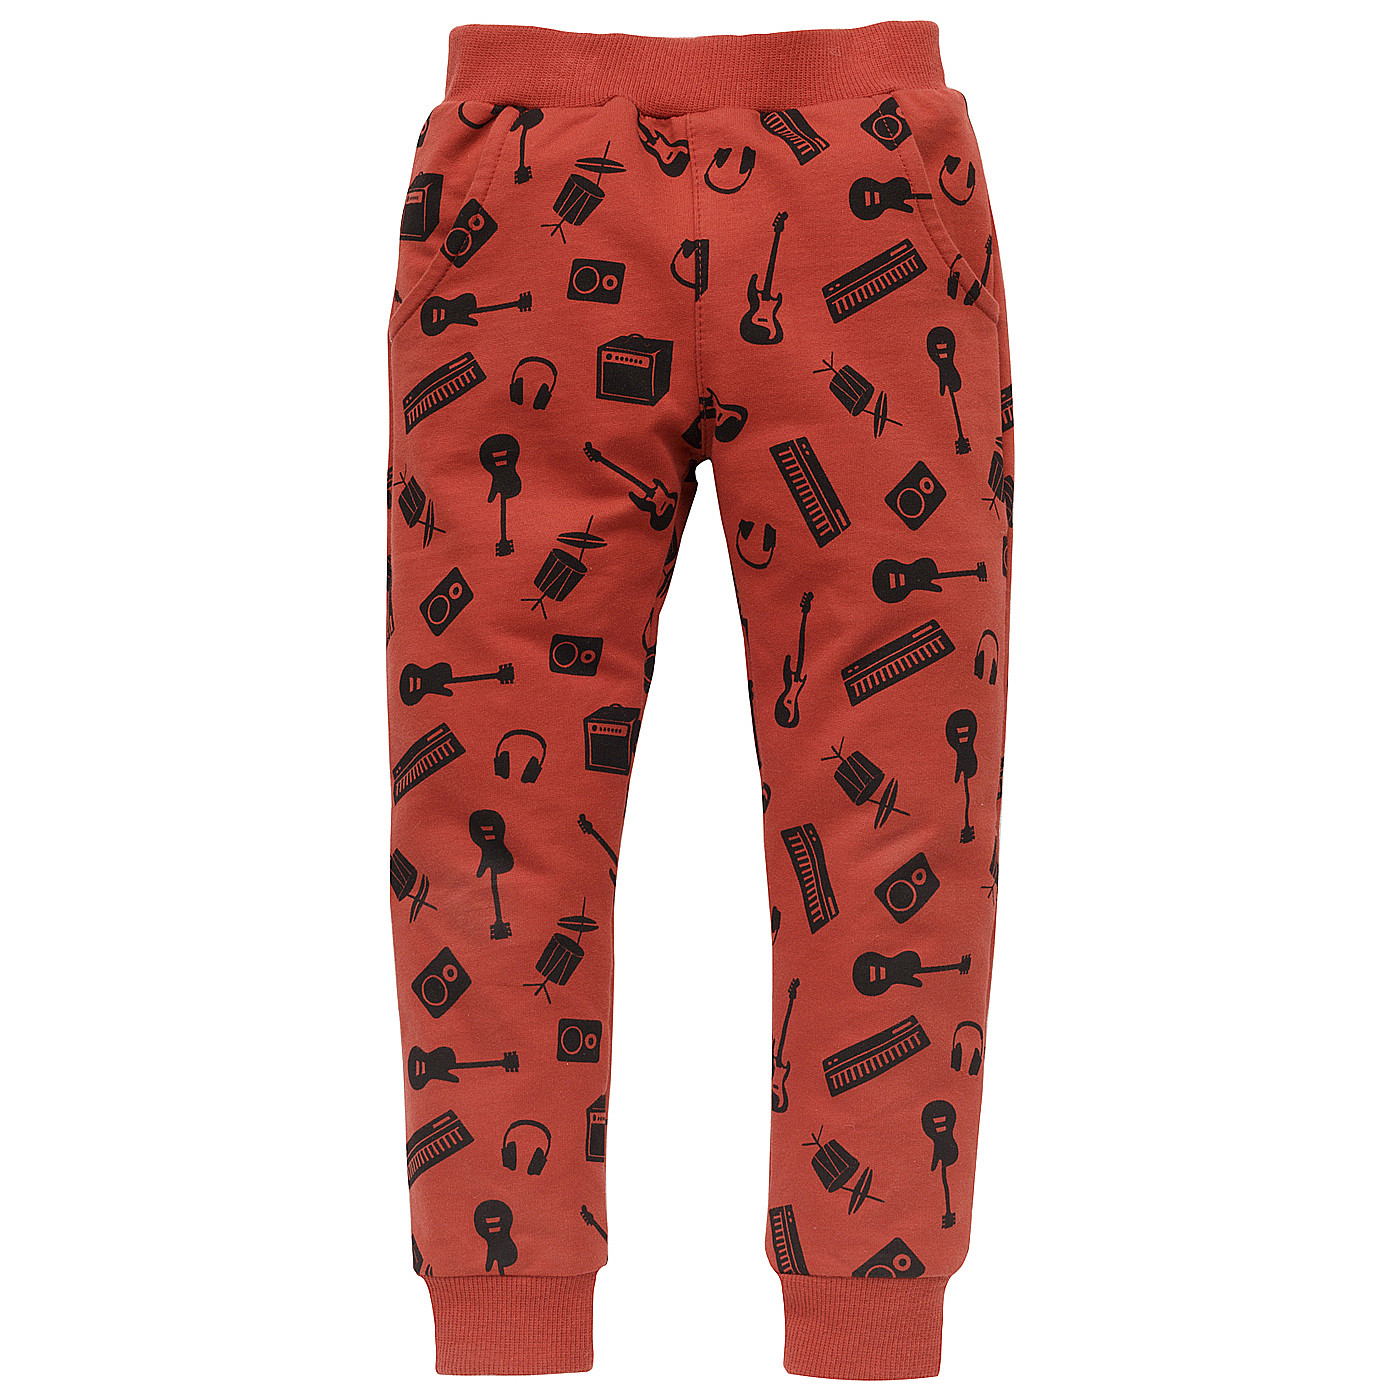 Pinokio Let's Rock Pants Red (Červené kalhoty) 104